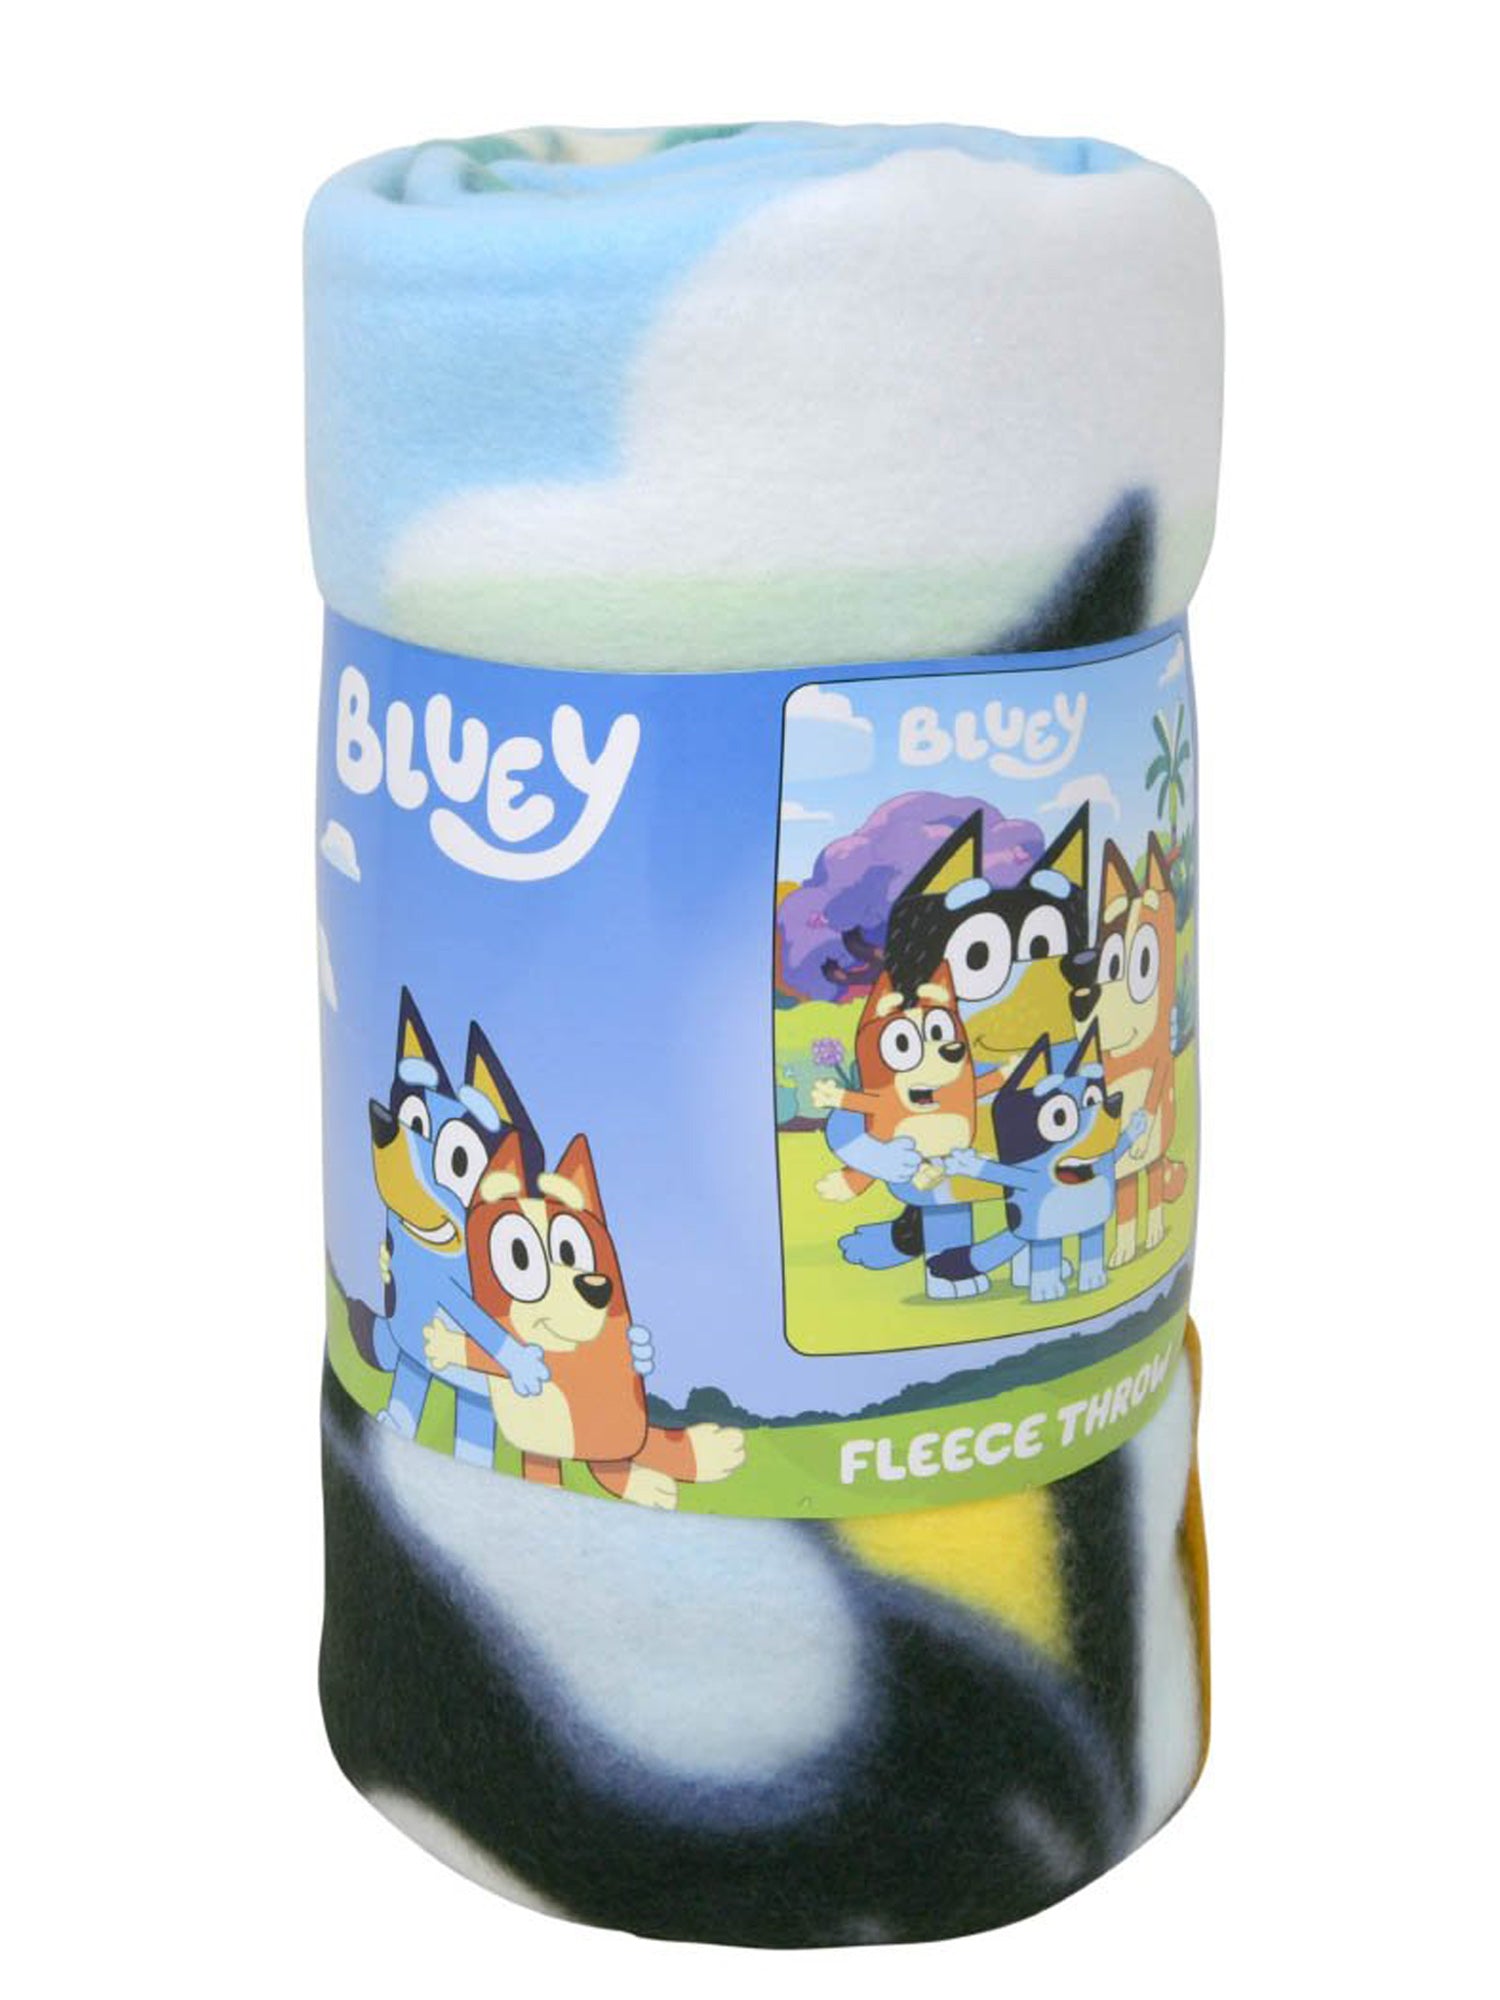 Bluey Throw Blanket 45" x 60" Bingo Soft Family Dogs Pups Boys Girls Kids